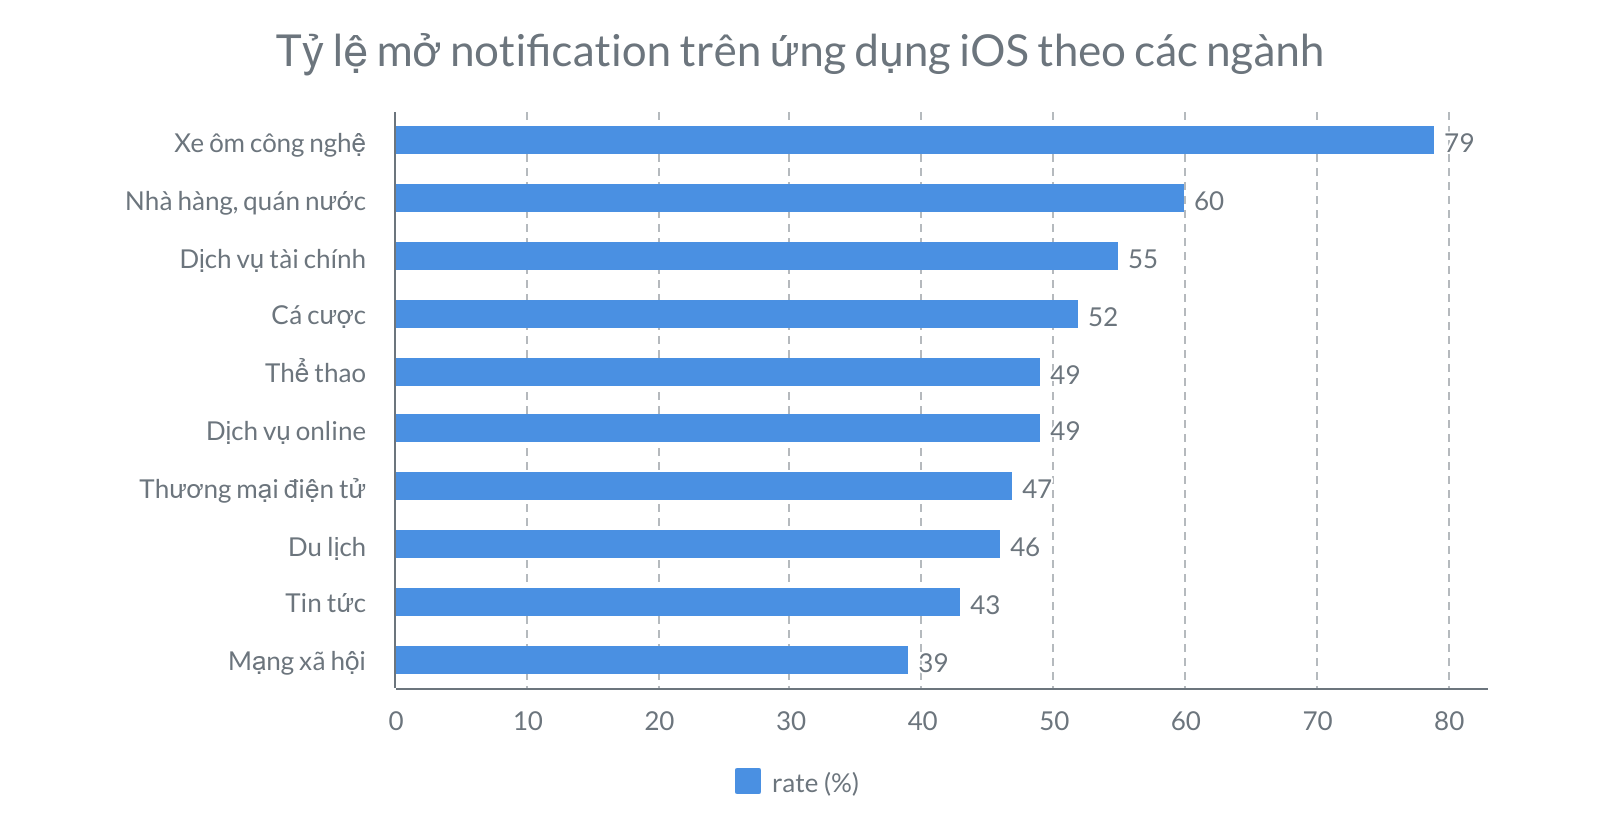 Tỷ lệ mở notification trên ứng dụng iOS theo các ngành